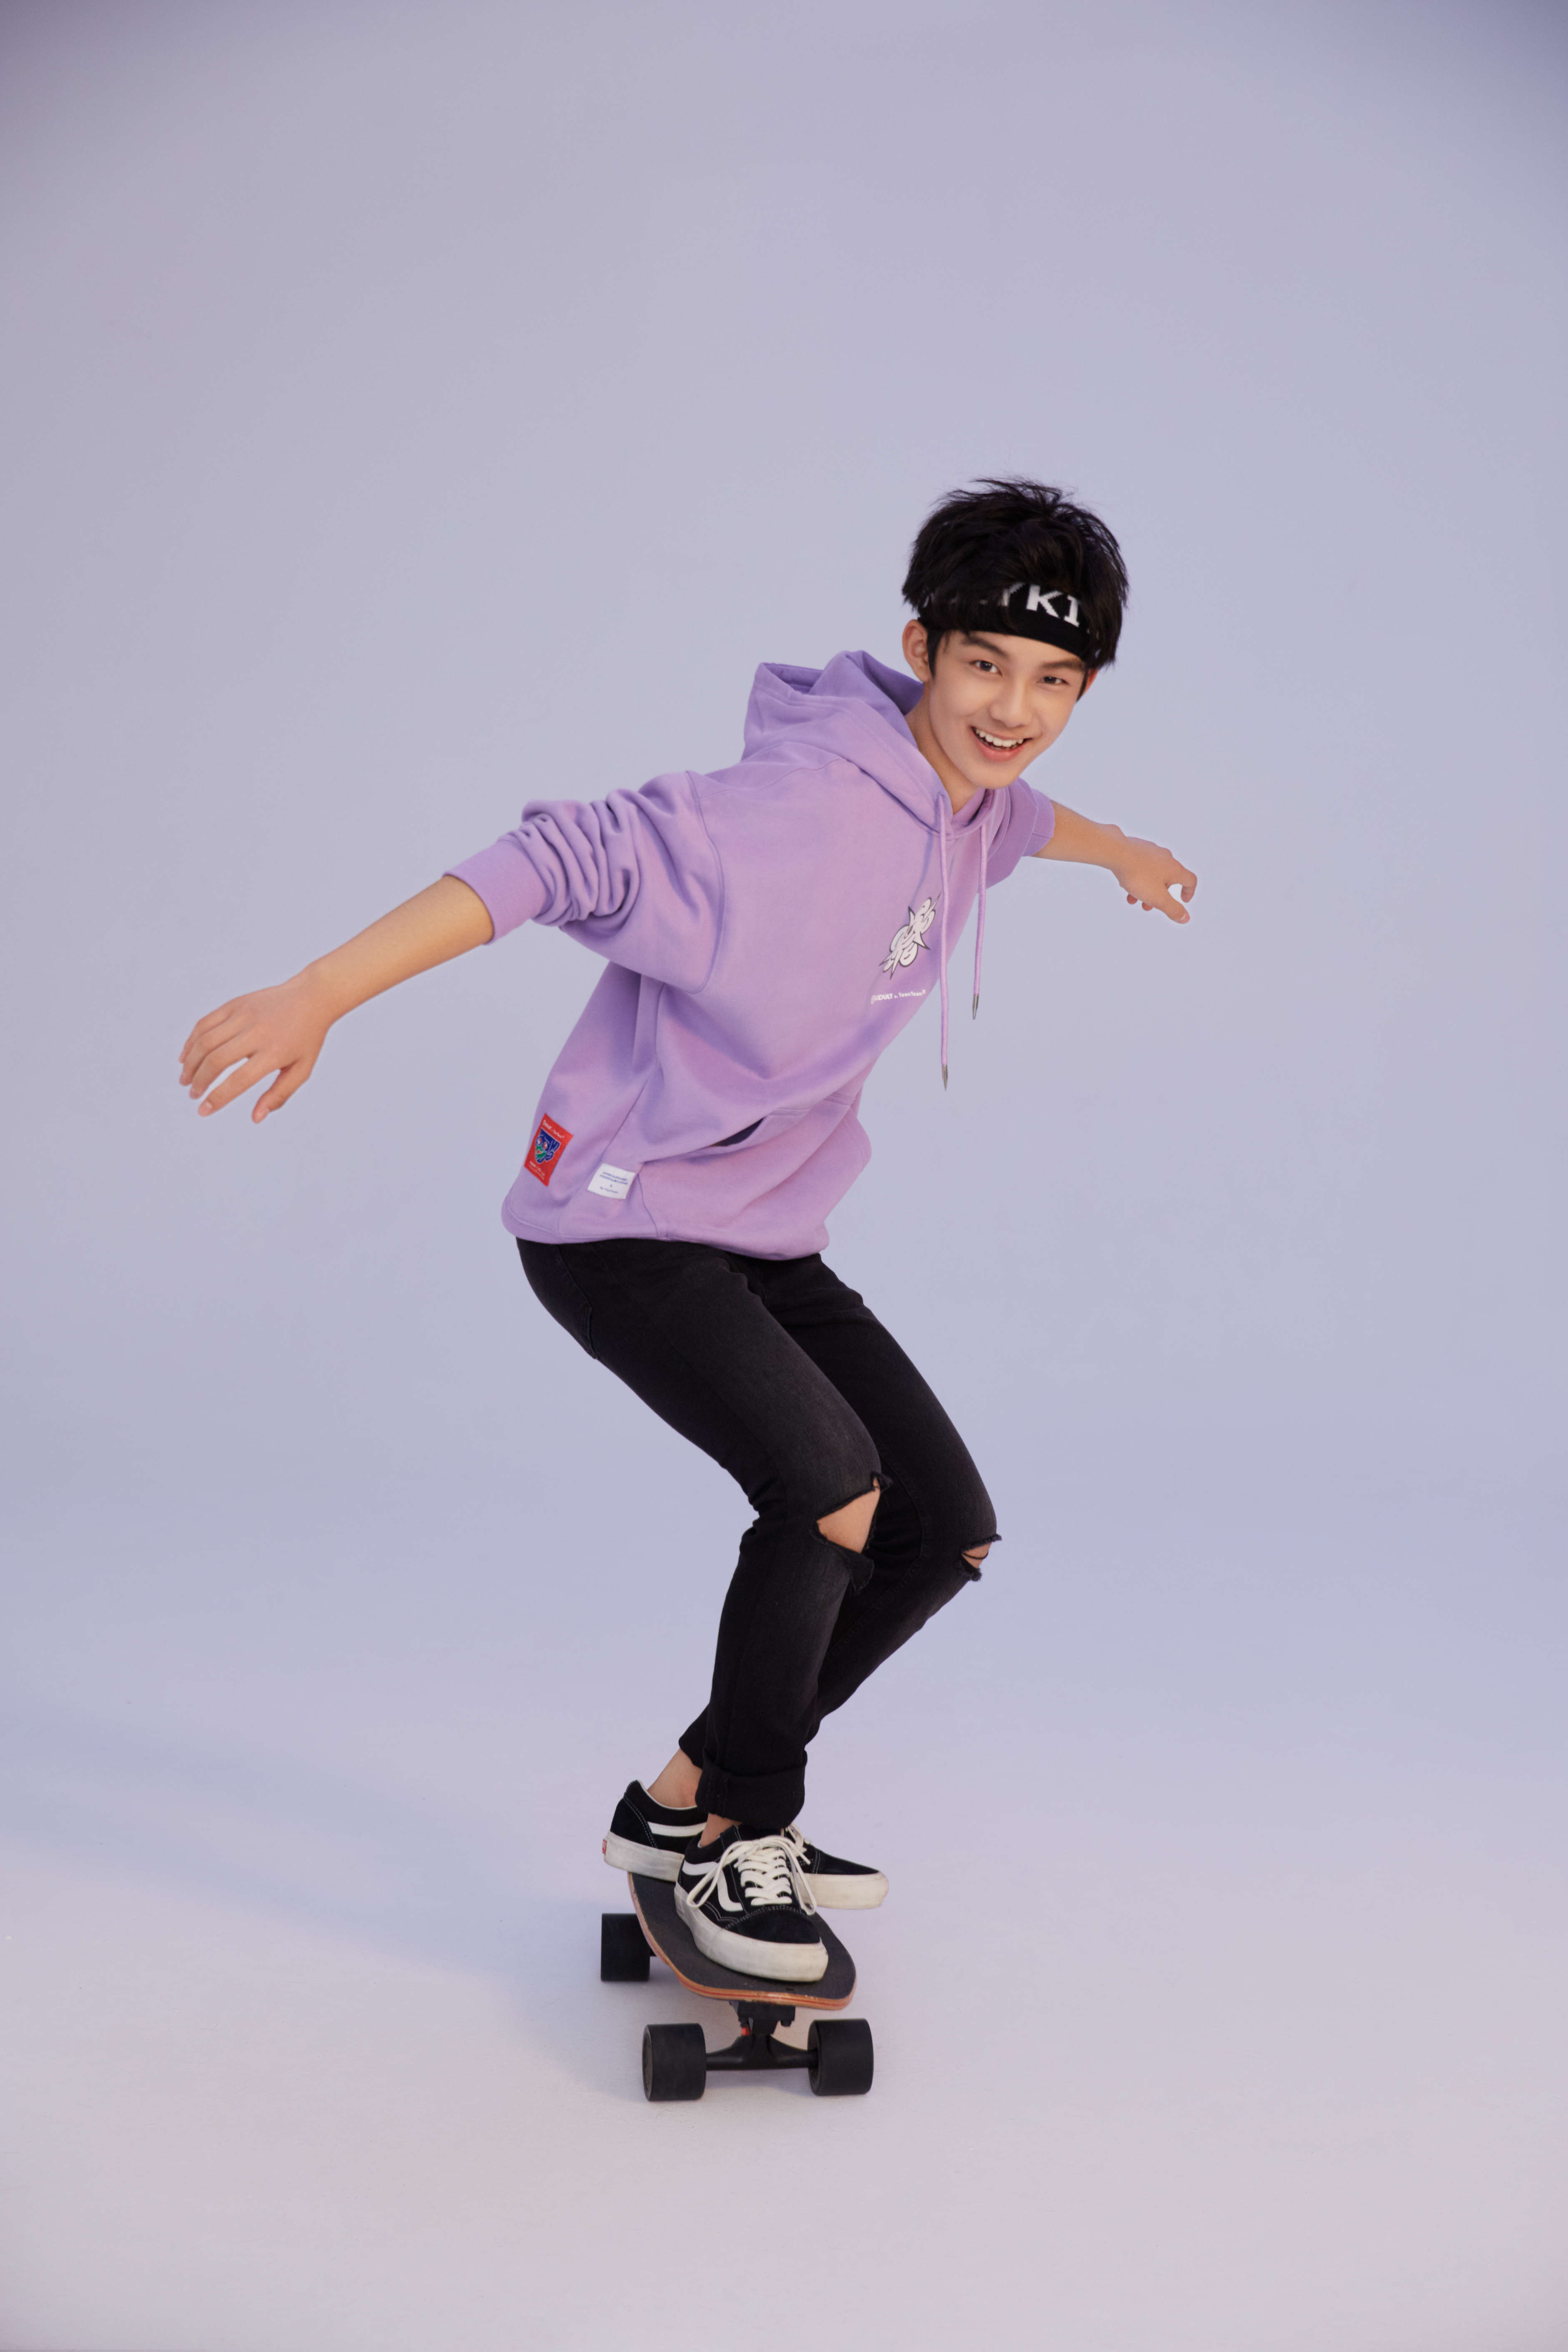 黄毅时尚运动写真曝光 滑板少年玩转帅气街头风